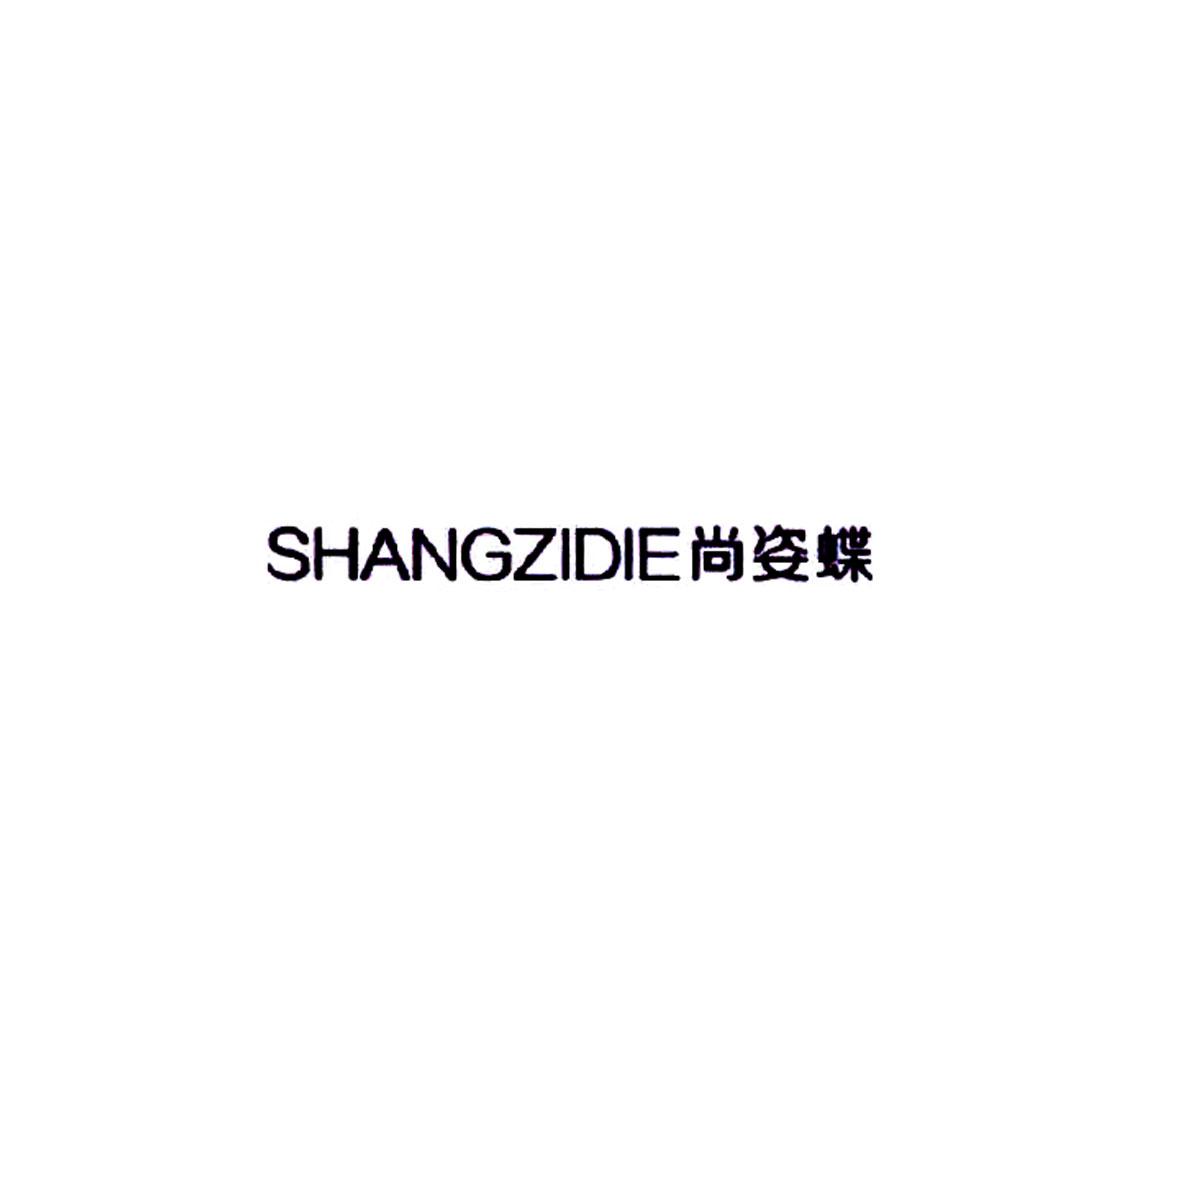 尚姿蝶logo